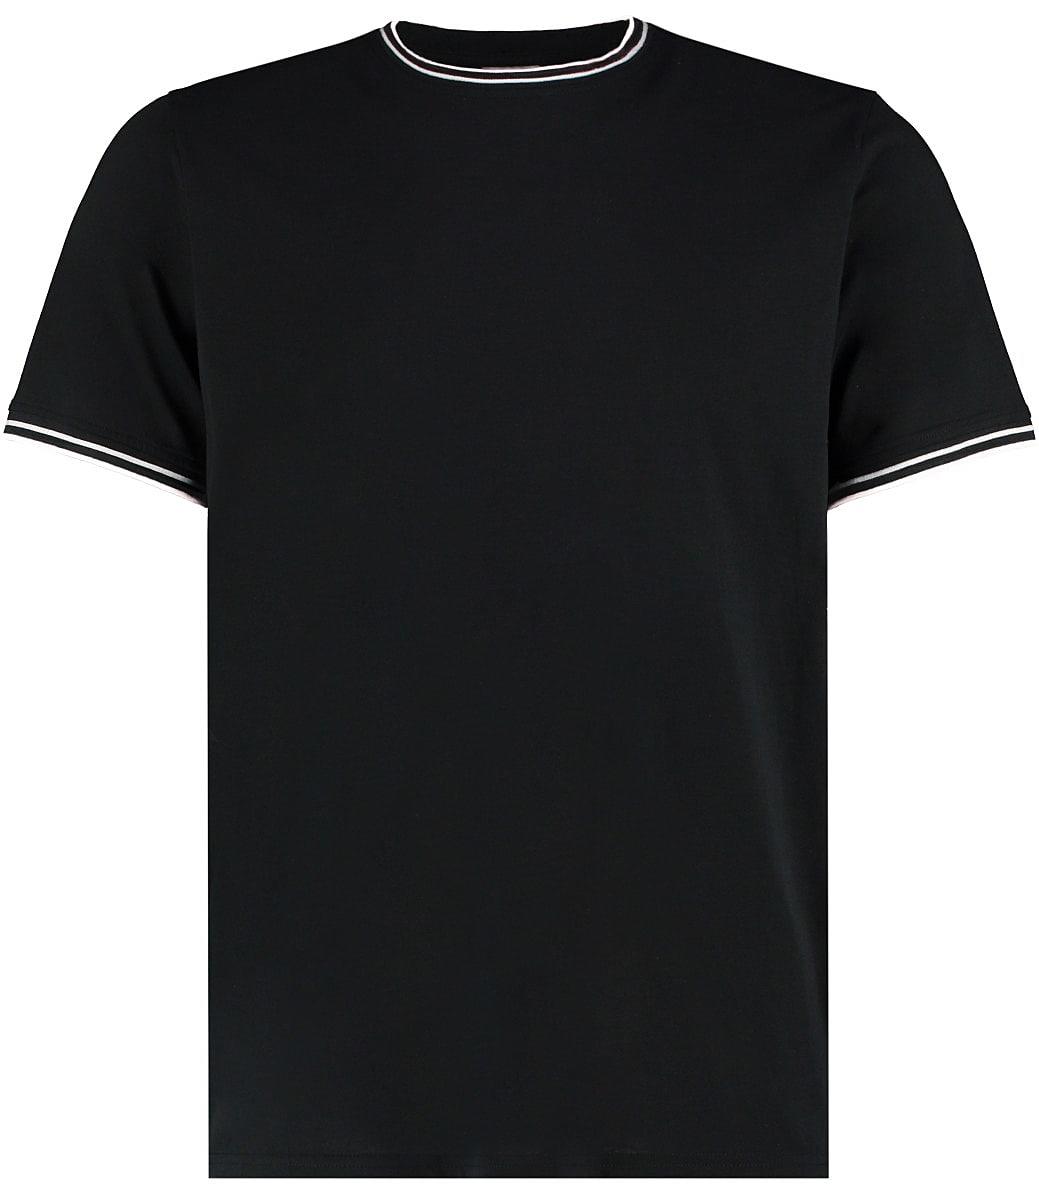 Kustom Kit Mens Tipped T-Shirt in Black / White / Grey (Product Code: KK519)